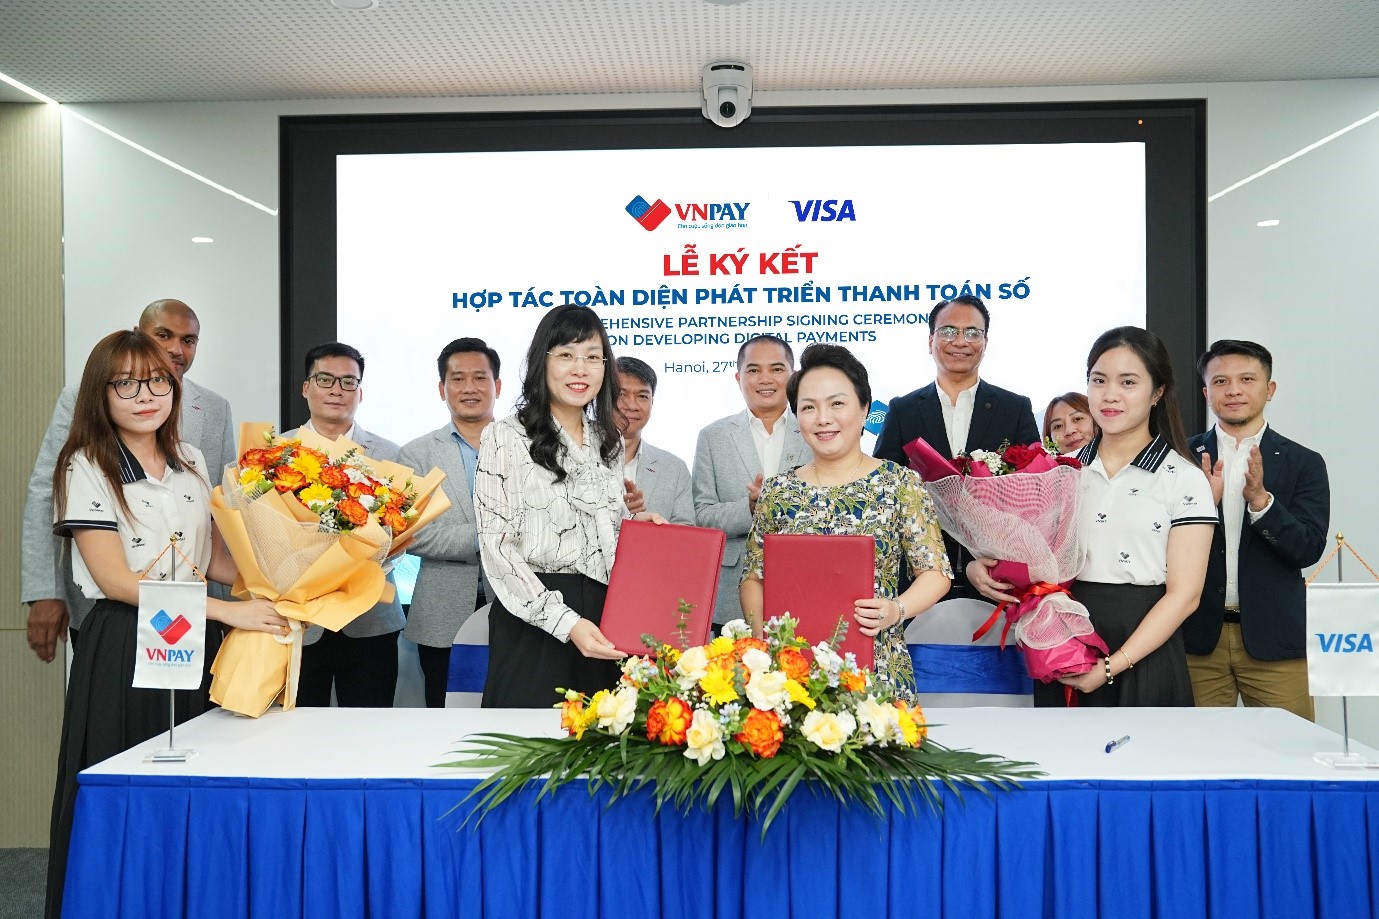 Bà Nguyễn Ánh Tuyết, Phó Tổng giám đốc VNPAY (trái) và bà Đặng Tuyết Dung Giám đốc Visa tại Việt Nam và Lào (phải) ký kết hợp tác. Ảnh: VNPAY